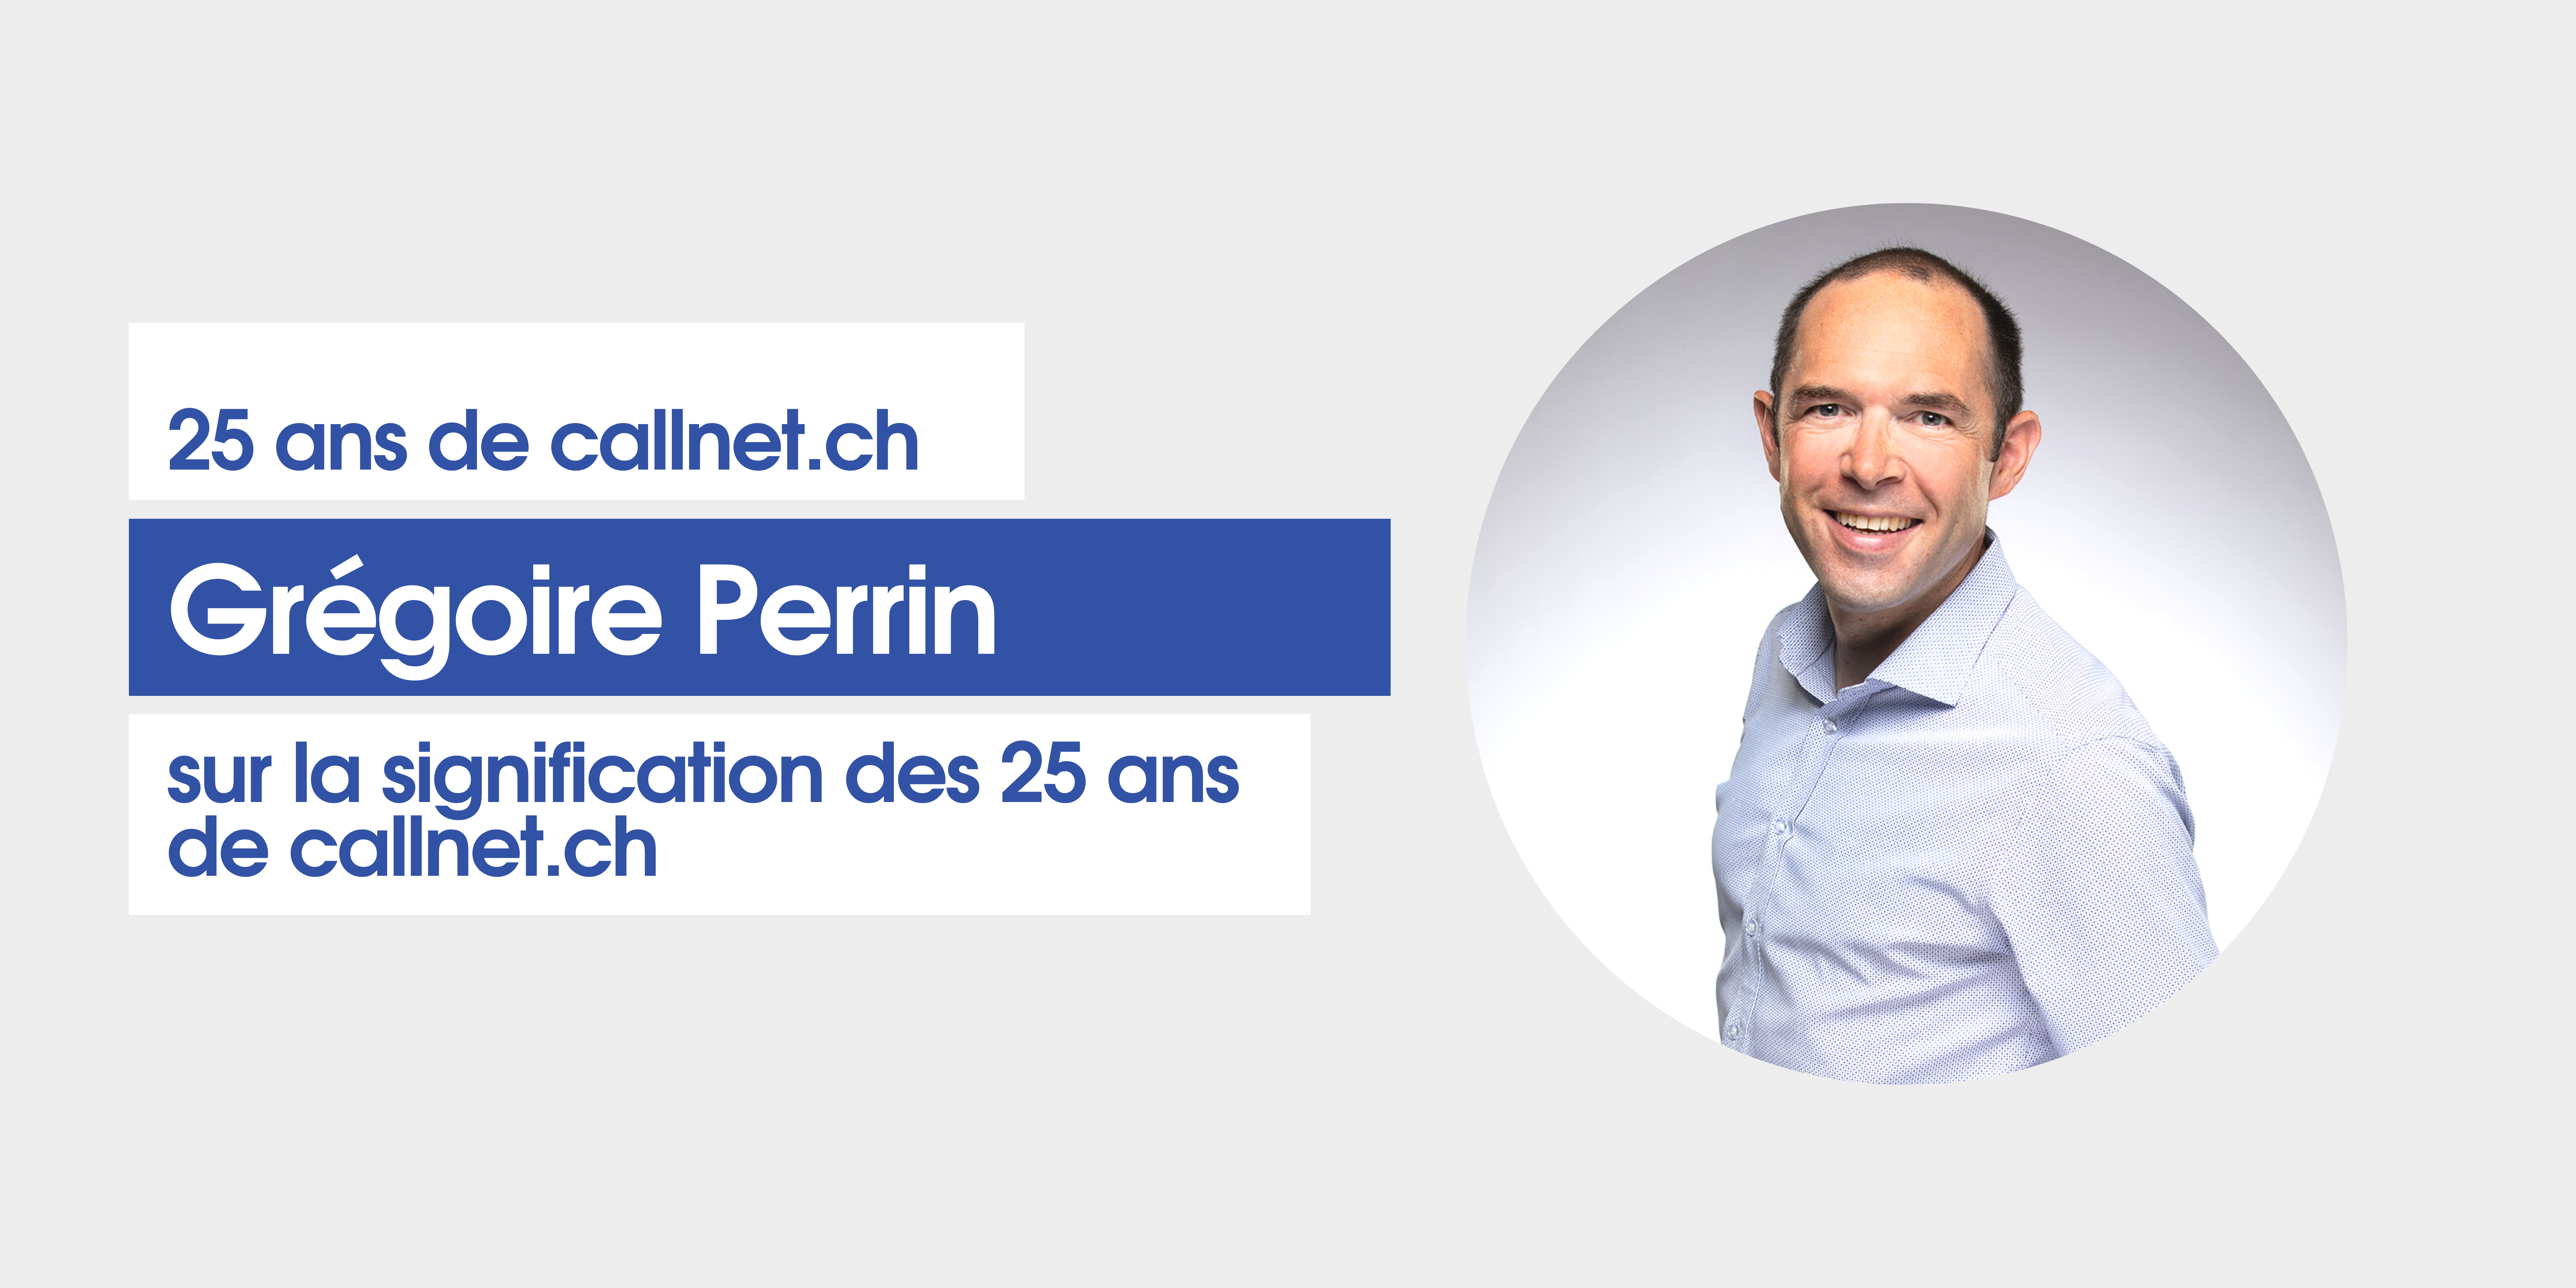 Grégoire Perrin sur les 25 ans de callnet.ch